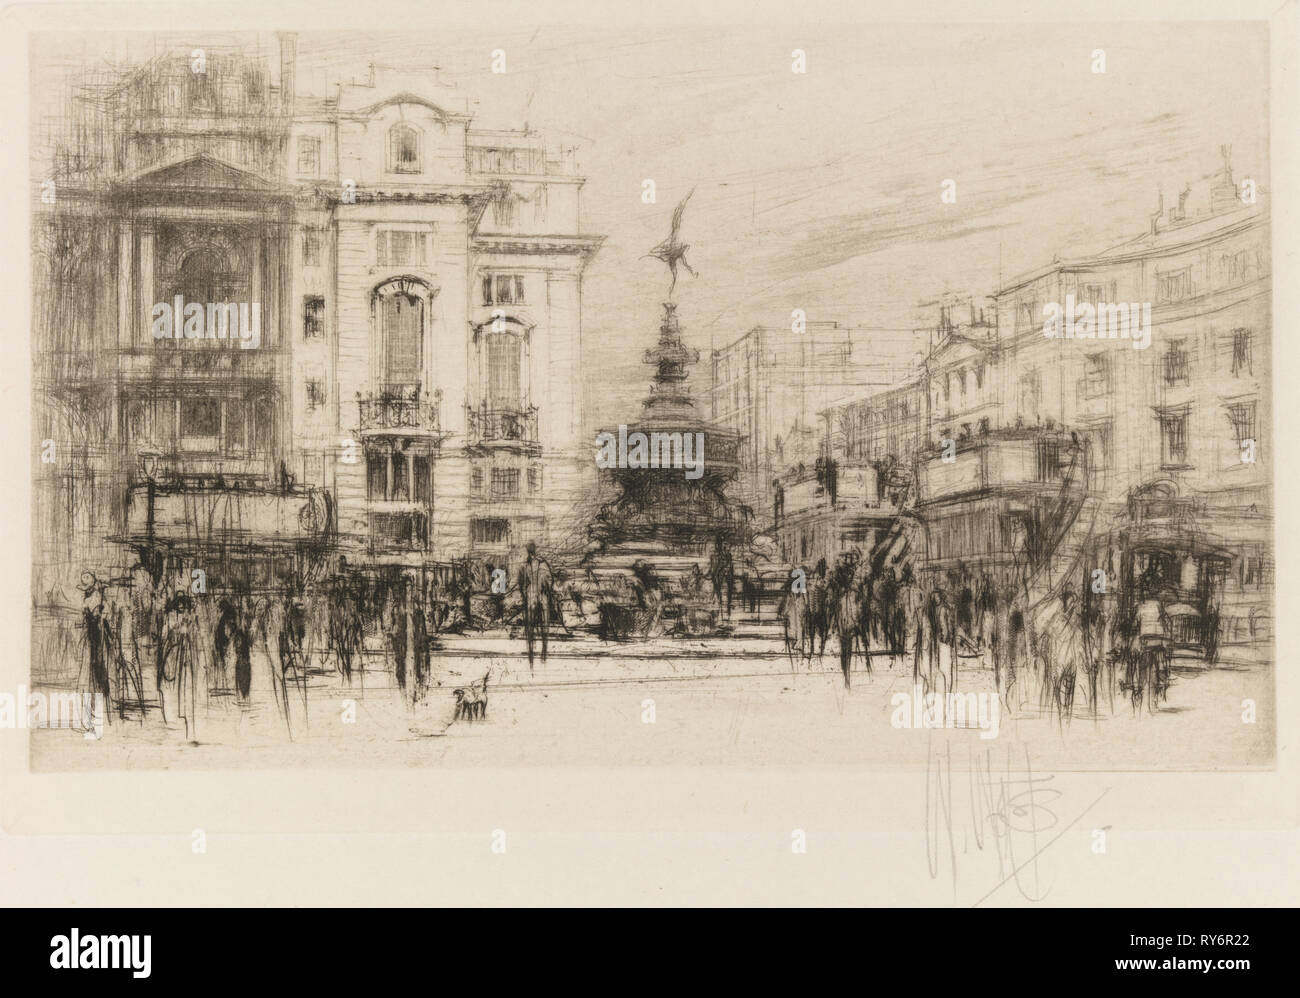 Set di Londra: Piccadilly Circus (con Criterion Theatre), 1924. William Walcot (British, 1874-1943). Acquaforte su carta intessuta; piastra: 10,9 x 17 cm (4 5/16 x 6 11/16 in.); foglio: 24,3 x 31,2 cm (9 9/16 x 12 5/16 in Foto Stock